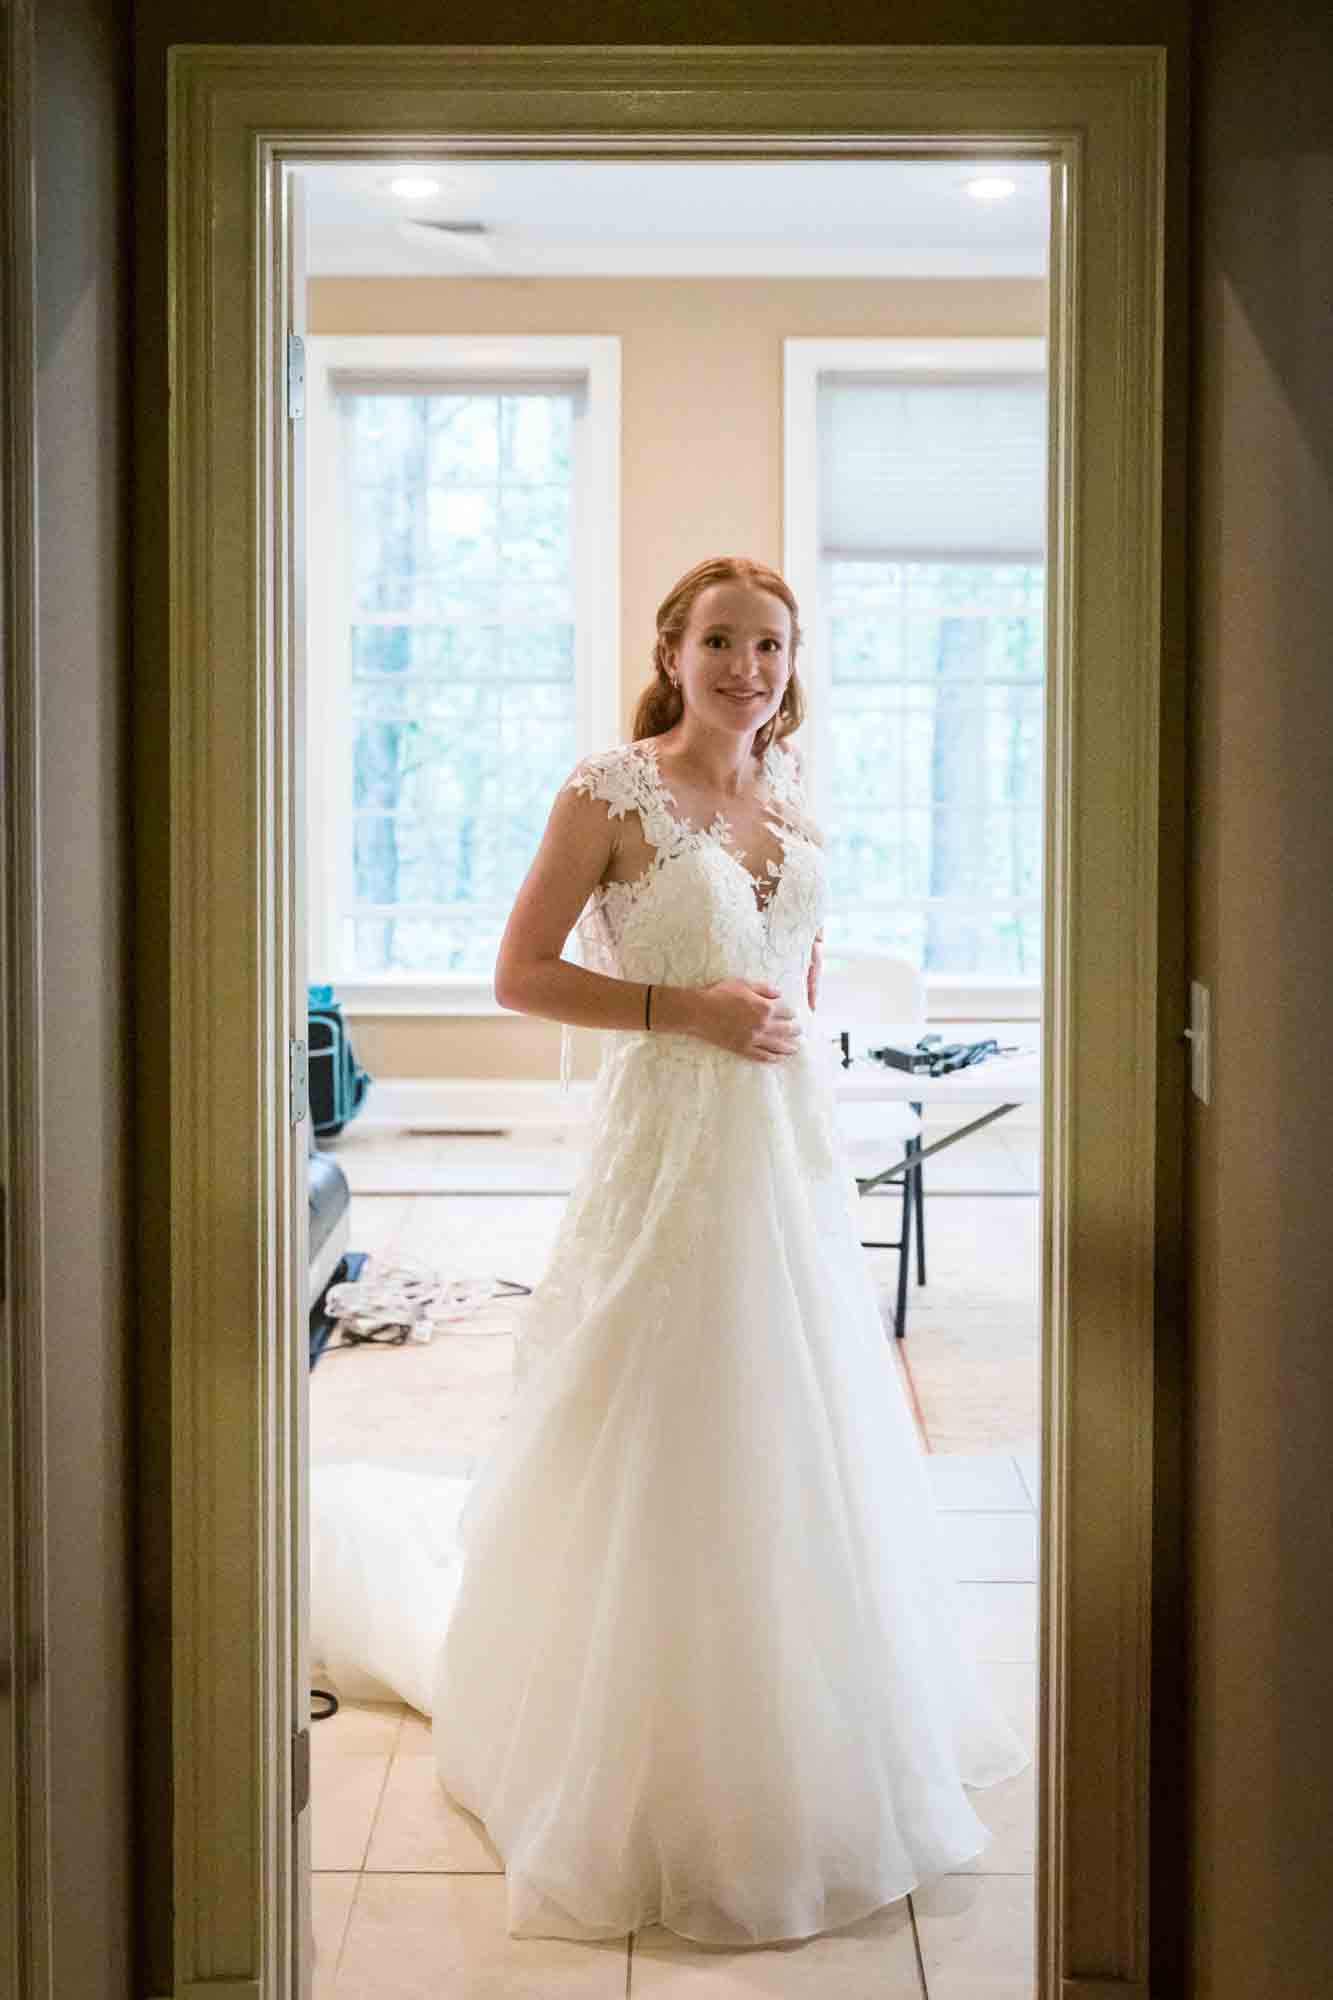 Bride wearing wedding dress in doorway